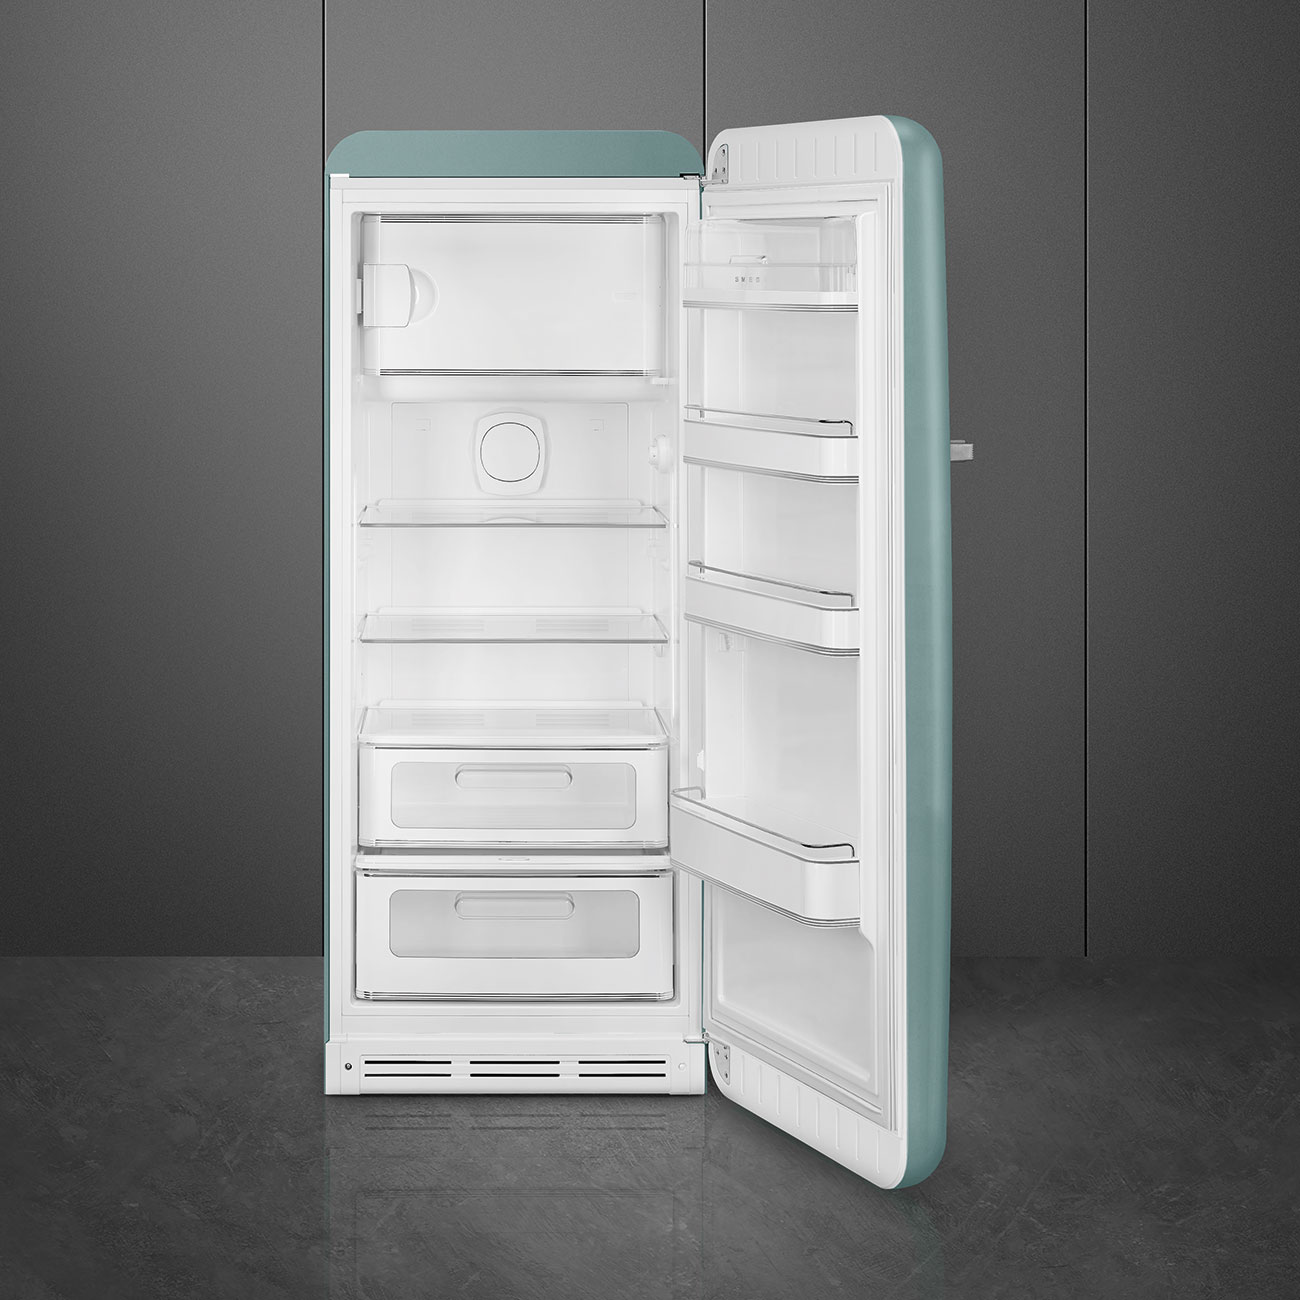 Emerald Green refrigerator - Smeg_4